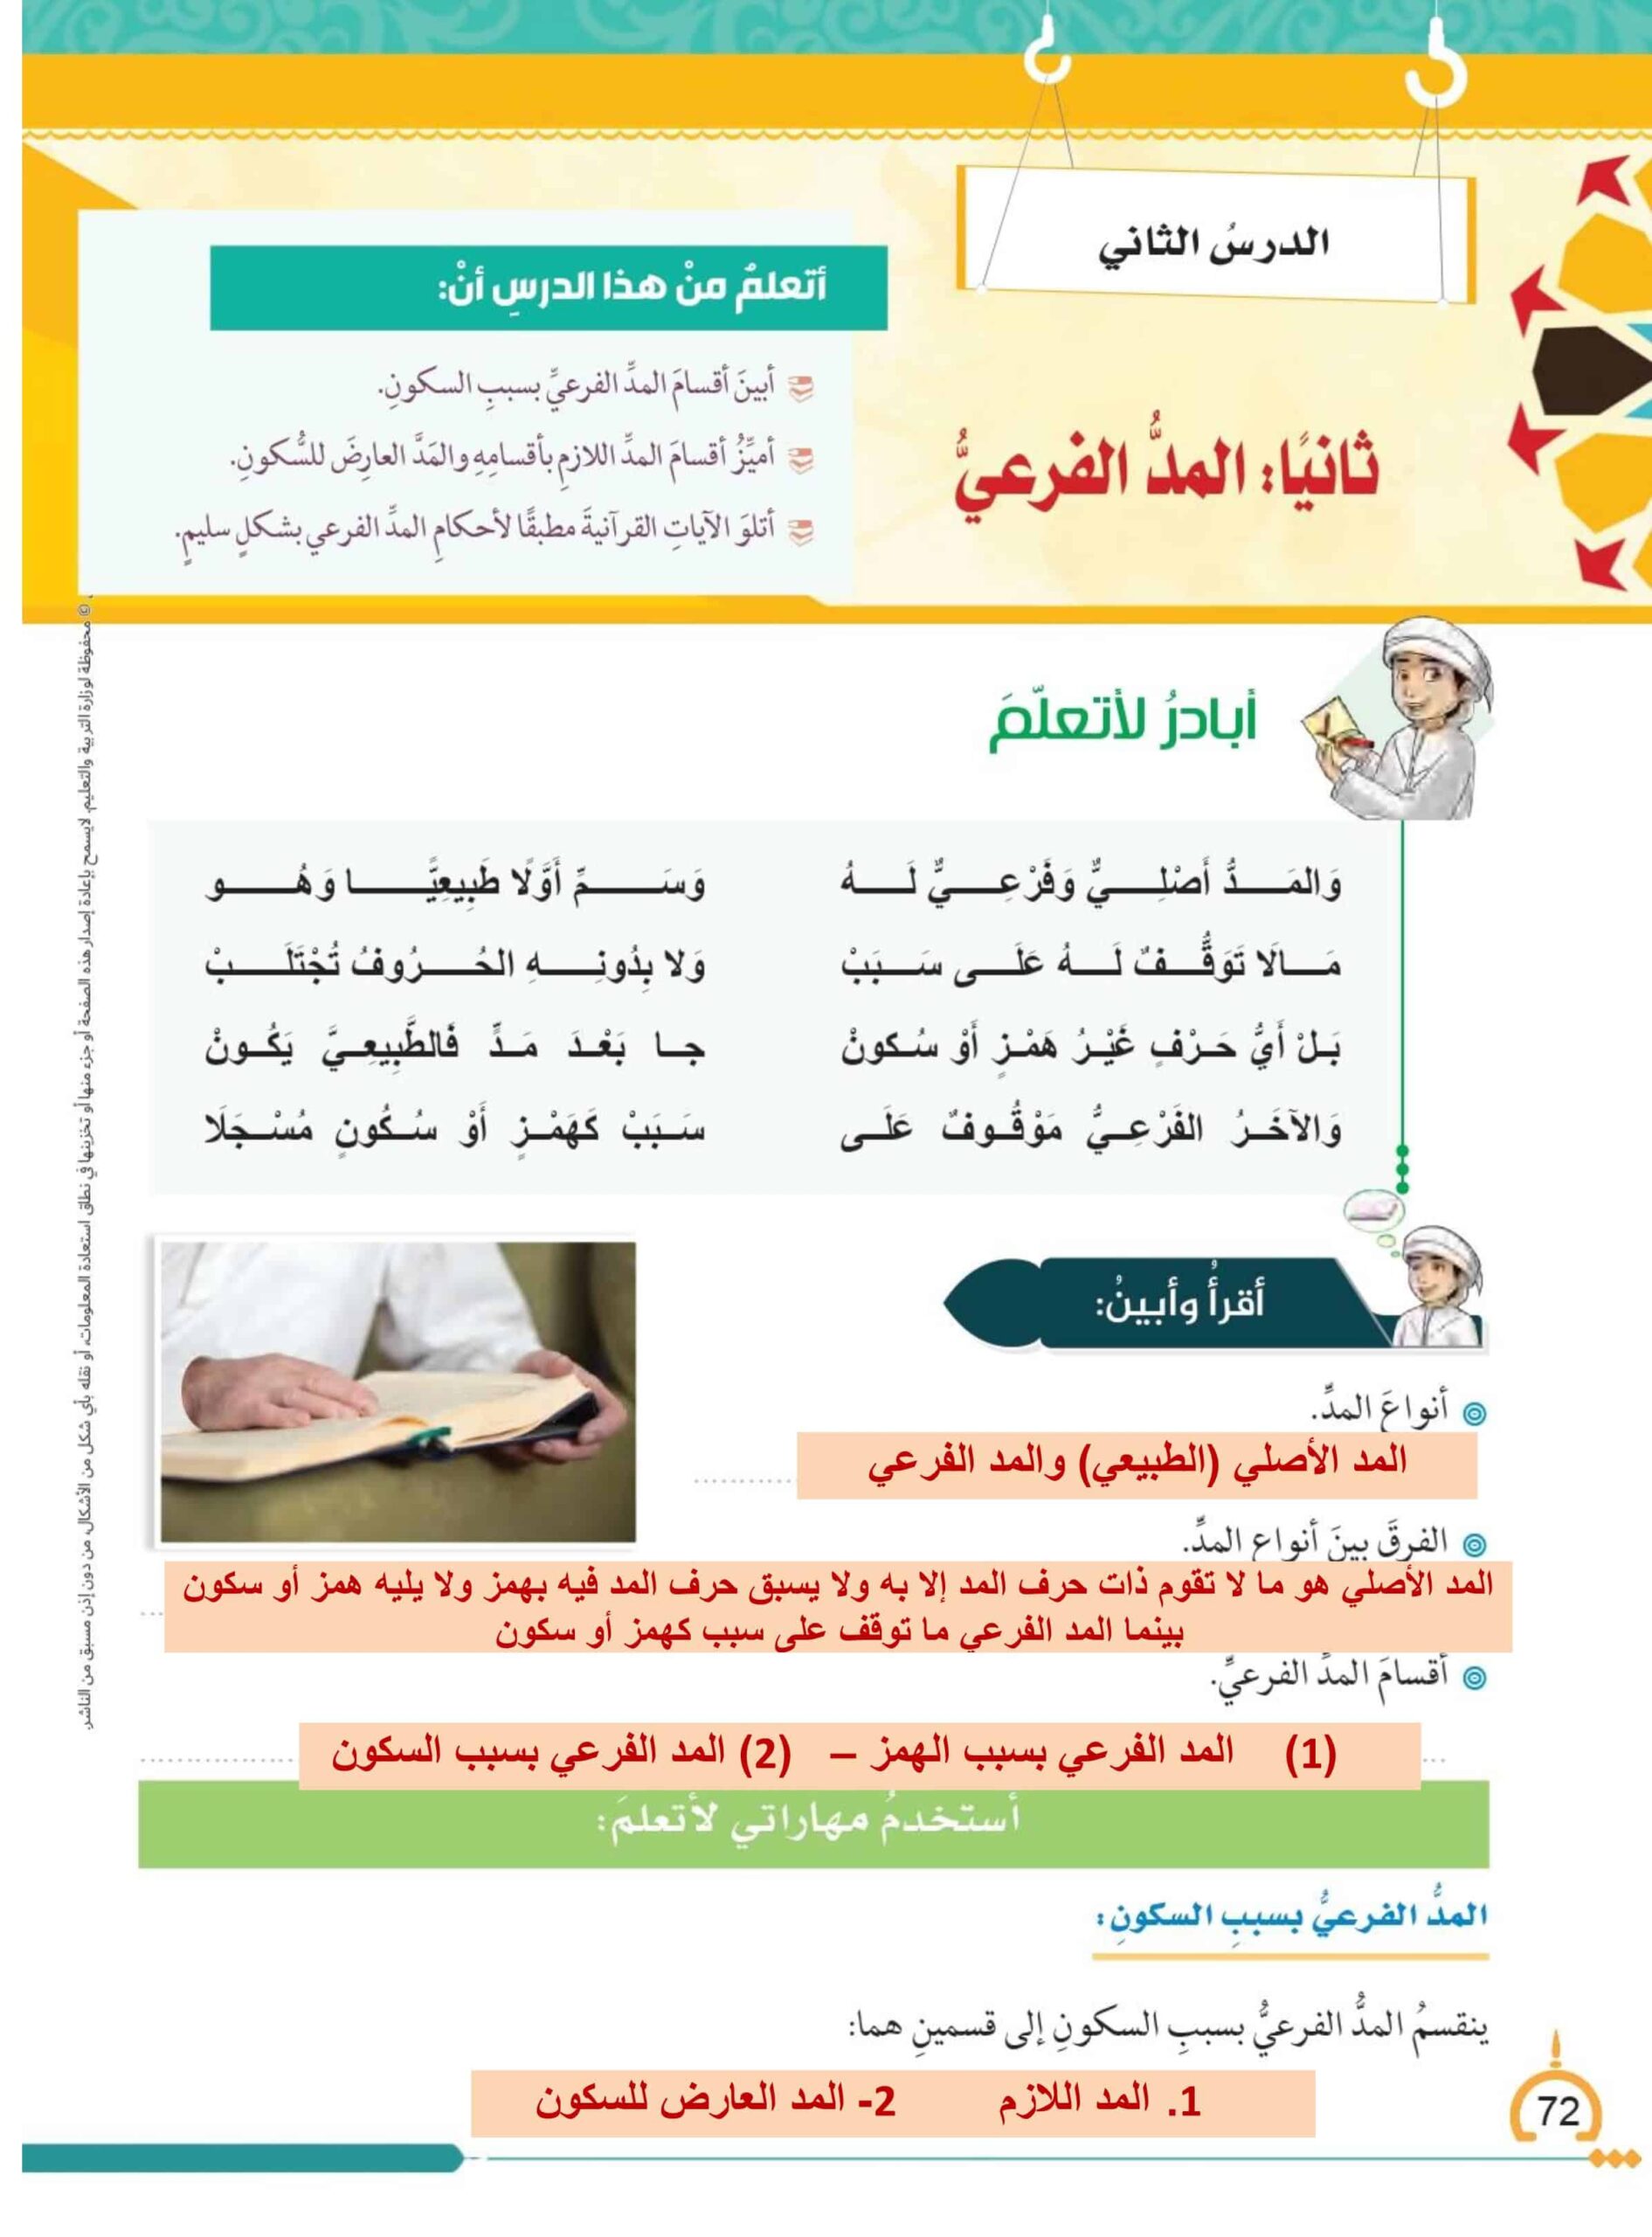 حل درس المد الفرعي كتاب الطالب التربية الإسلامية الصف الثامن